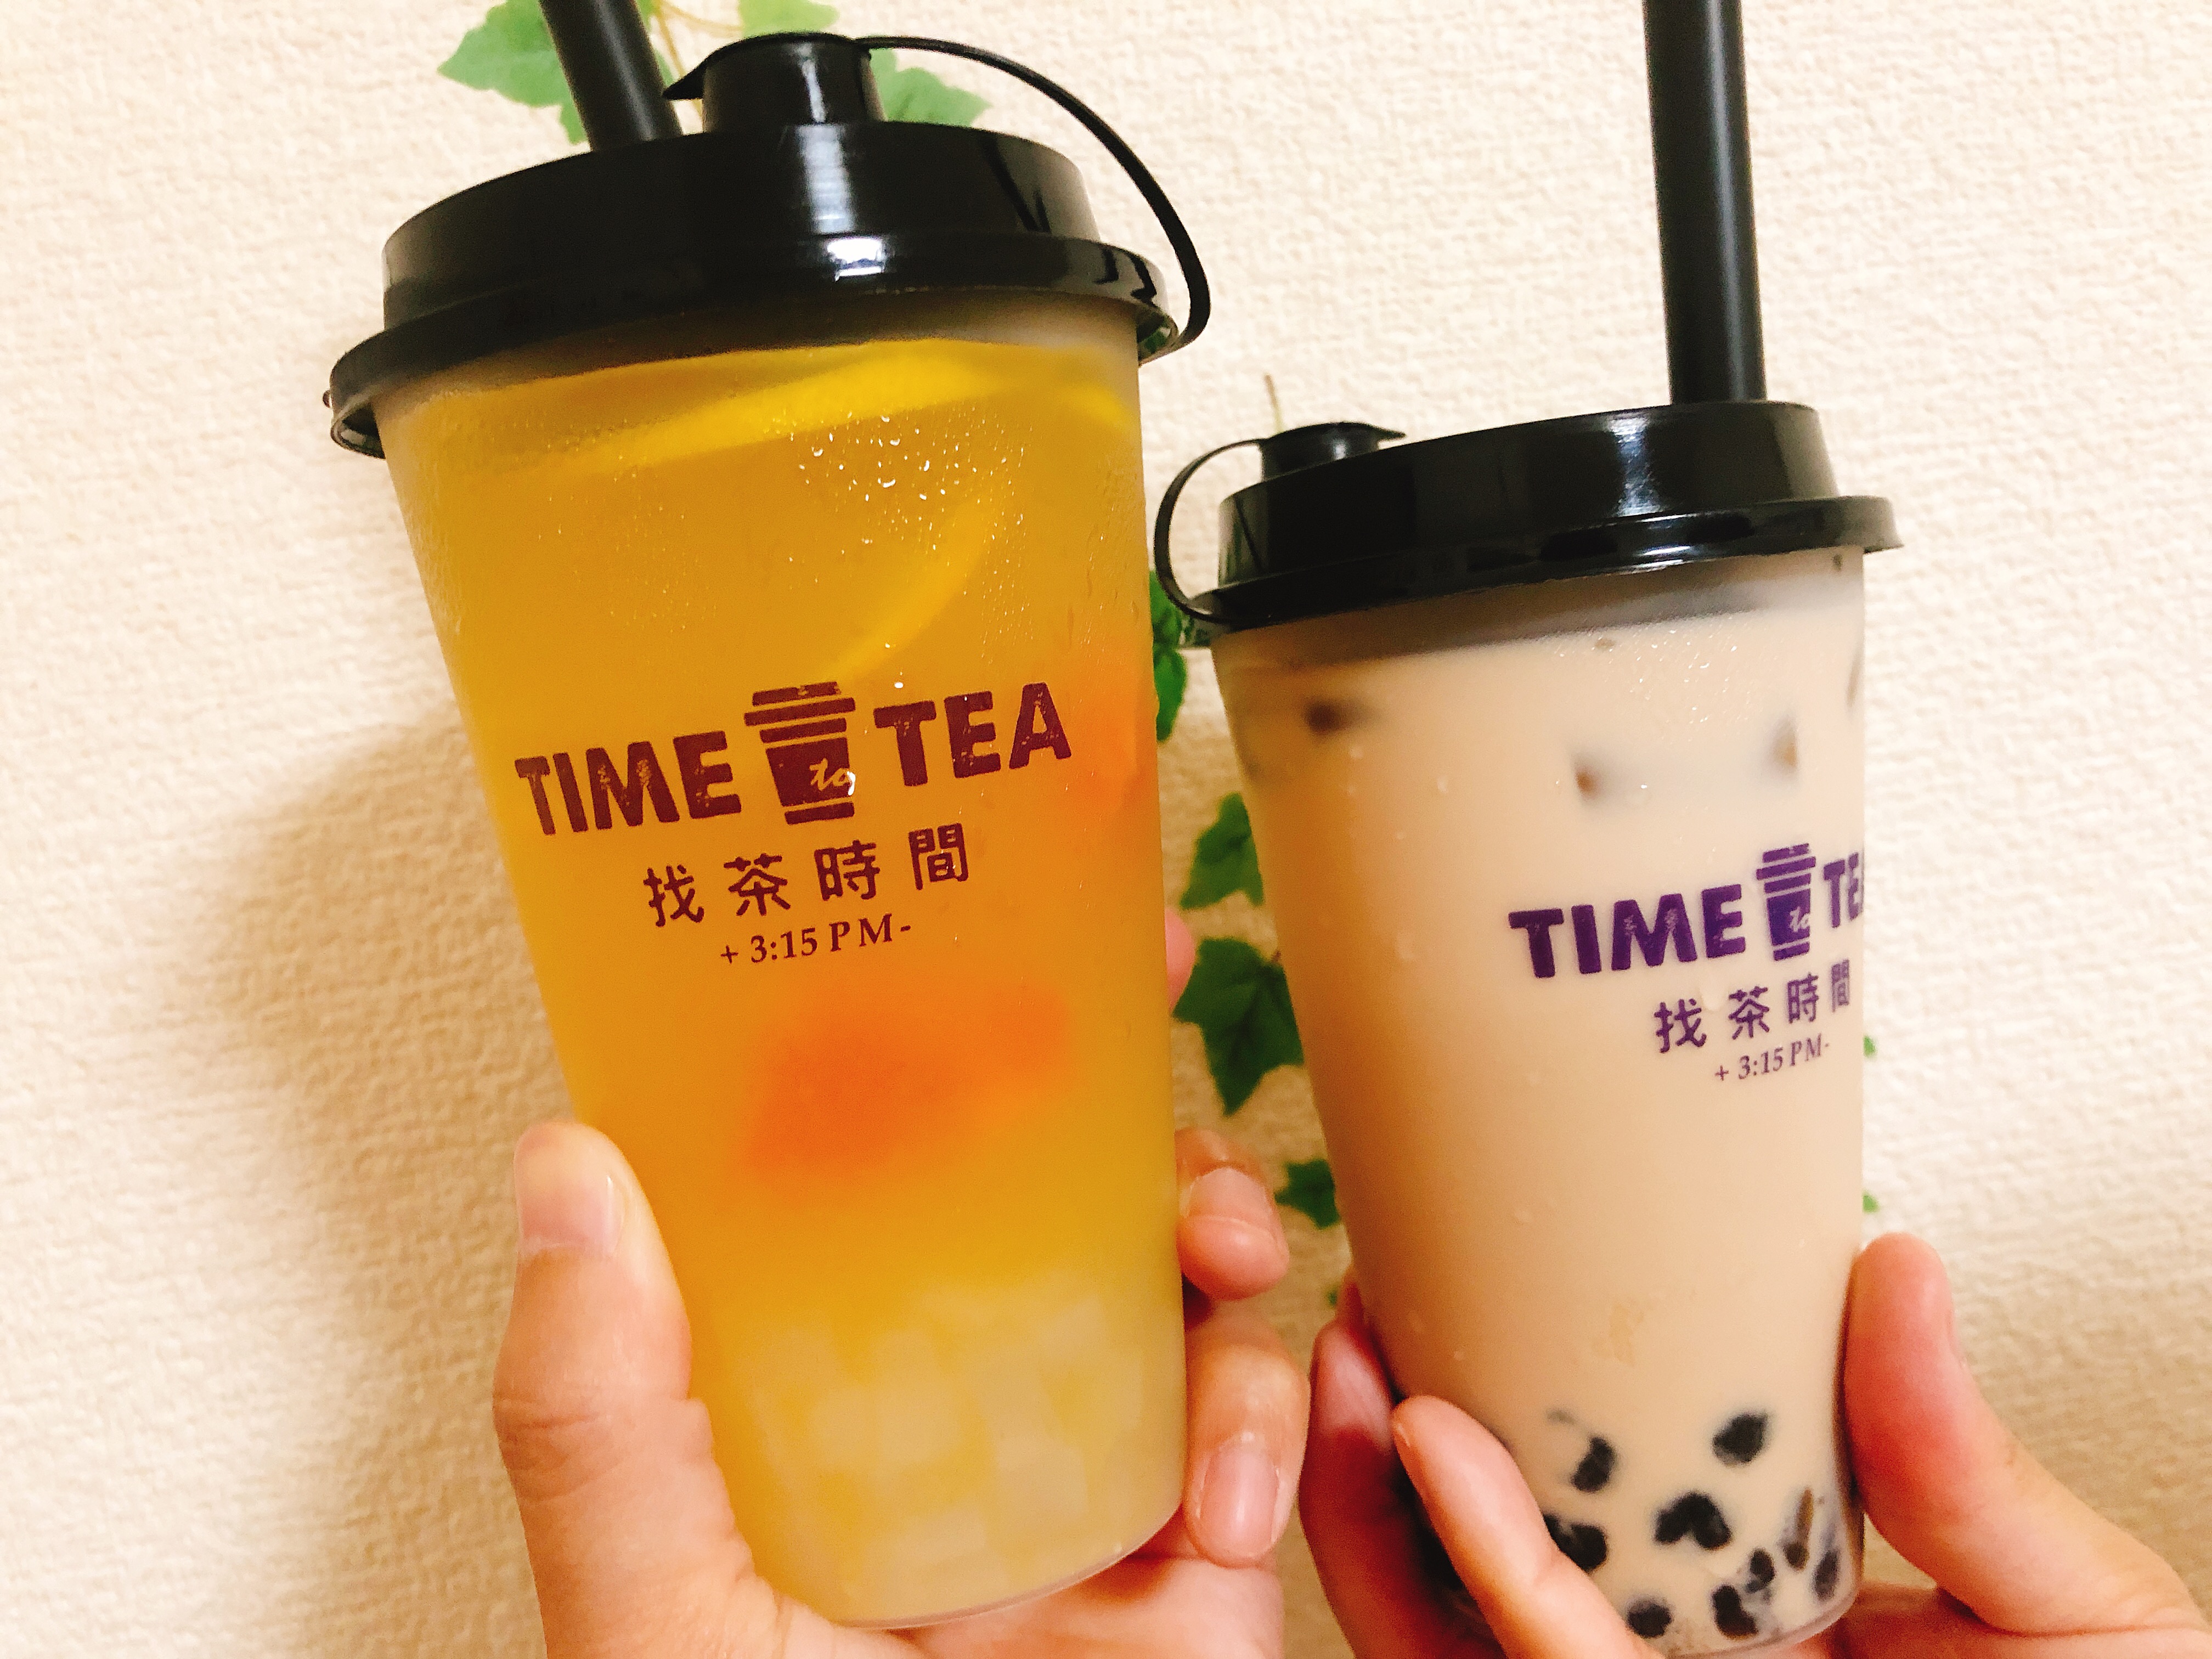 time to tea　３Cフルーツジャスミン茶　タピオカミルクティー